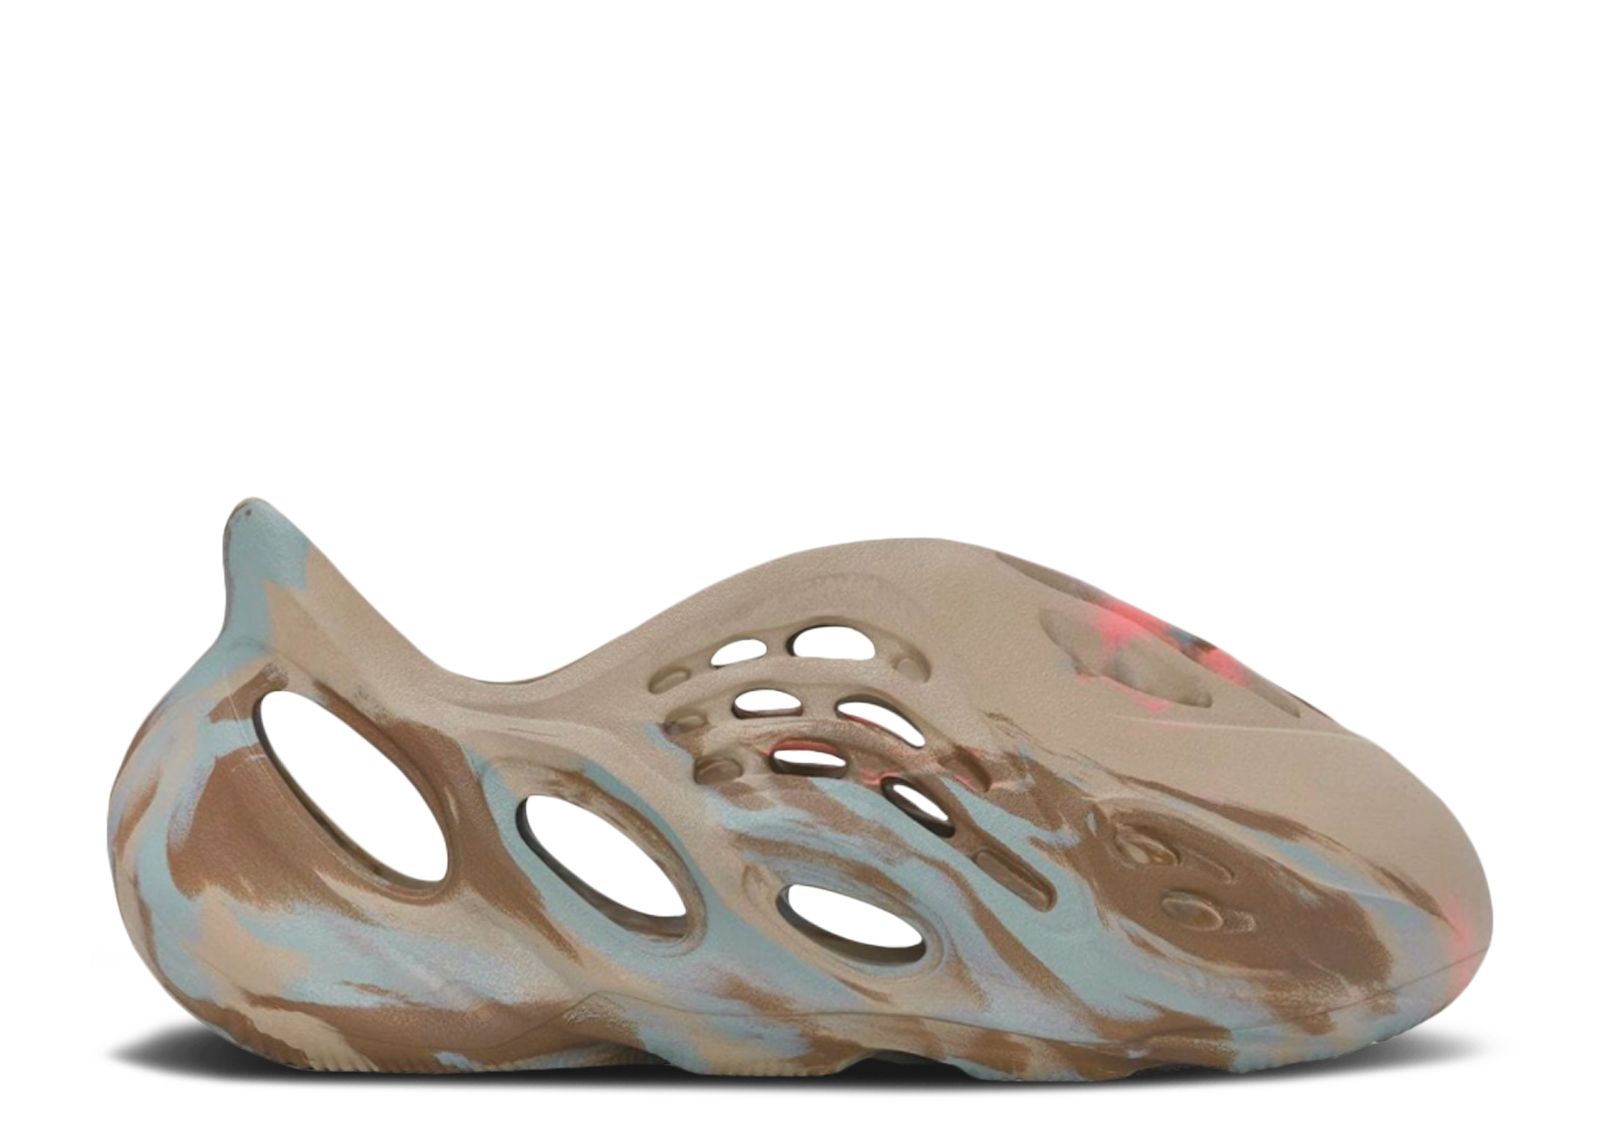 Кроссовки adidas Yeezy Foam Runner Kids 'Mx Sand Grey', коричневый цена и фото